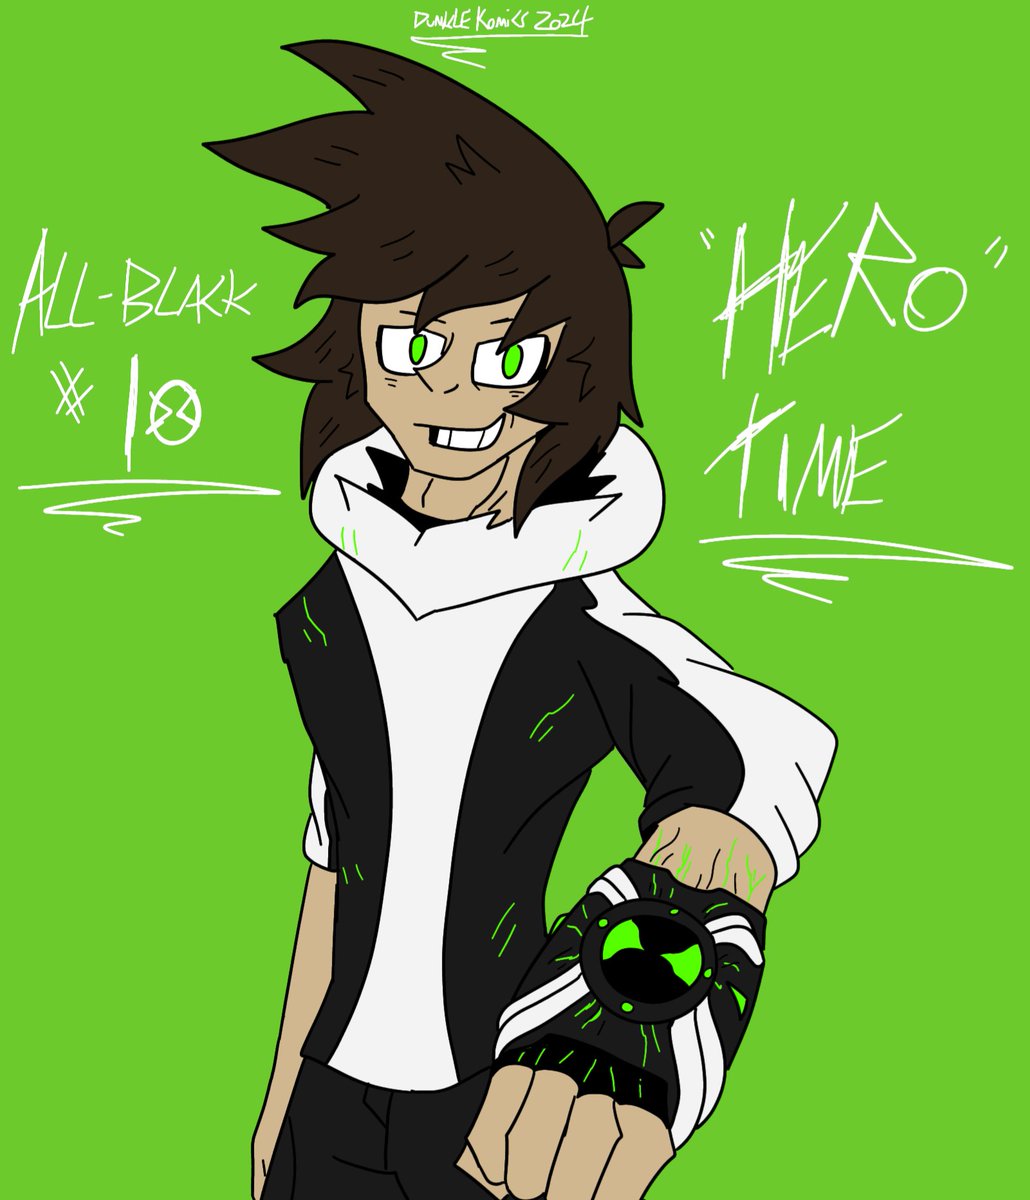 All-Black #10: [Hero] Time

I gave in
#Ben10 #Symbiote #AllBlack